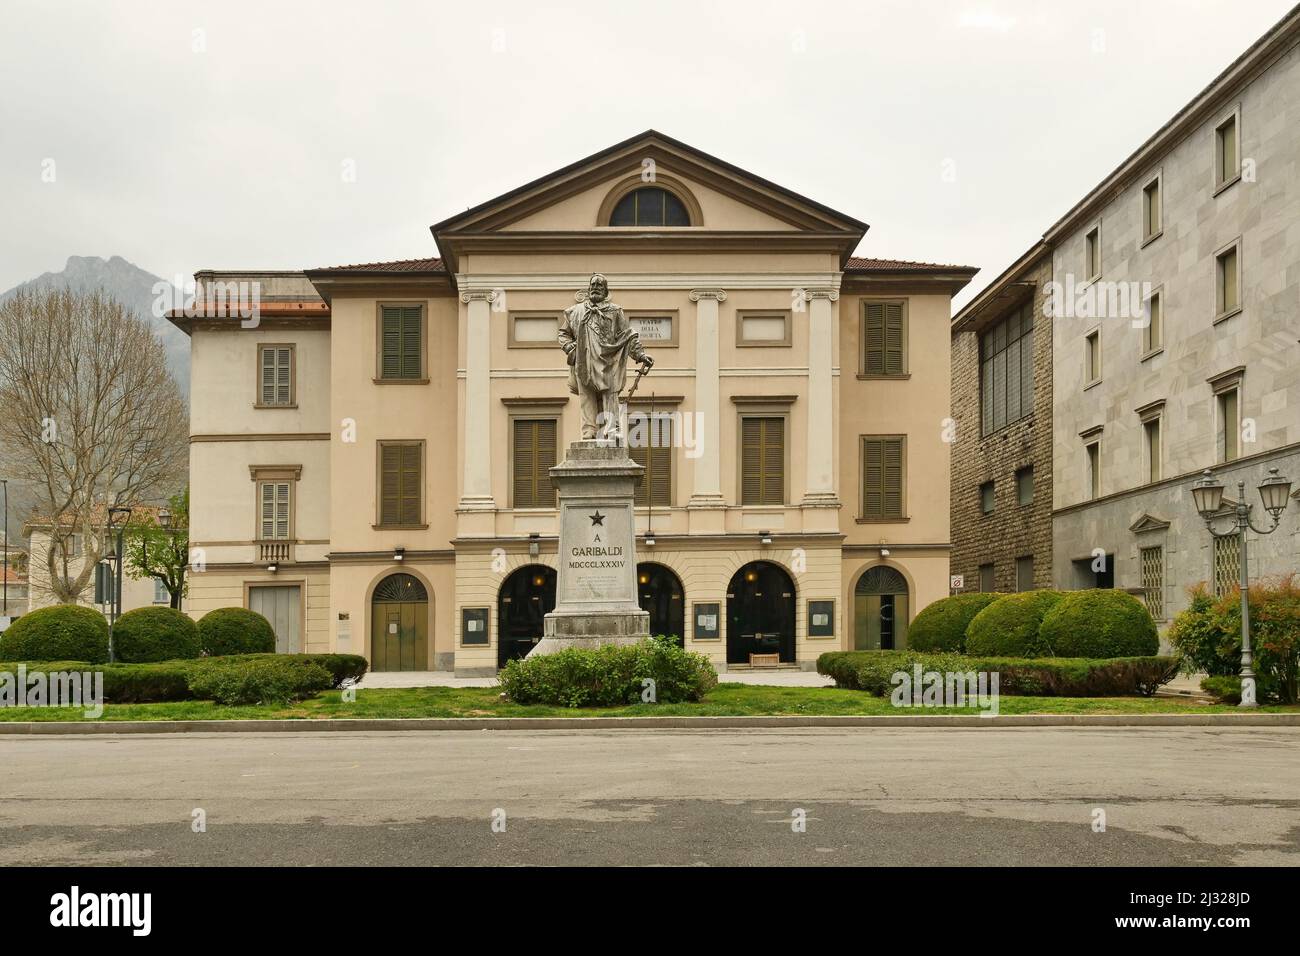 Giuseppe Garibaldi monument in Mazzini square, Lecco, Lombardy, Italy Stock Photo